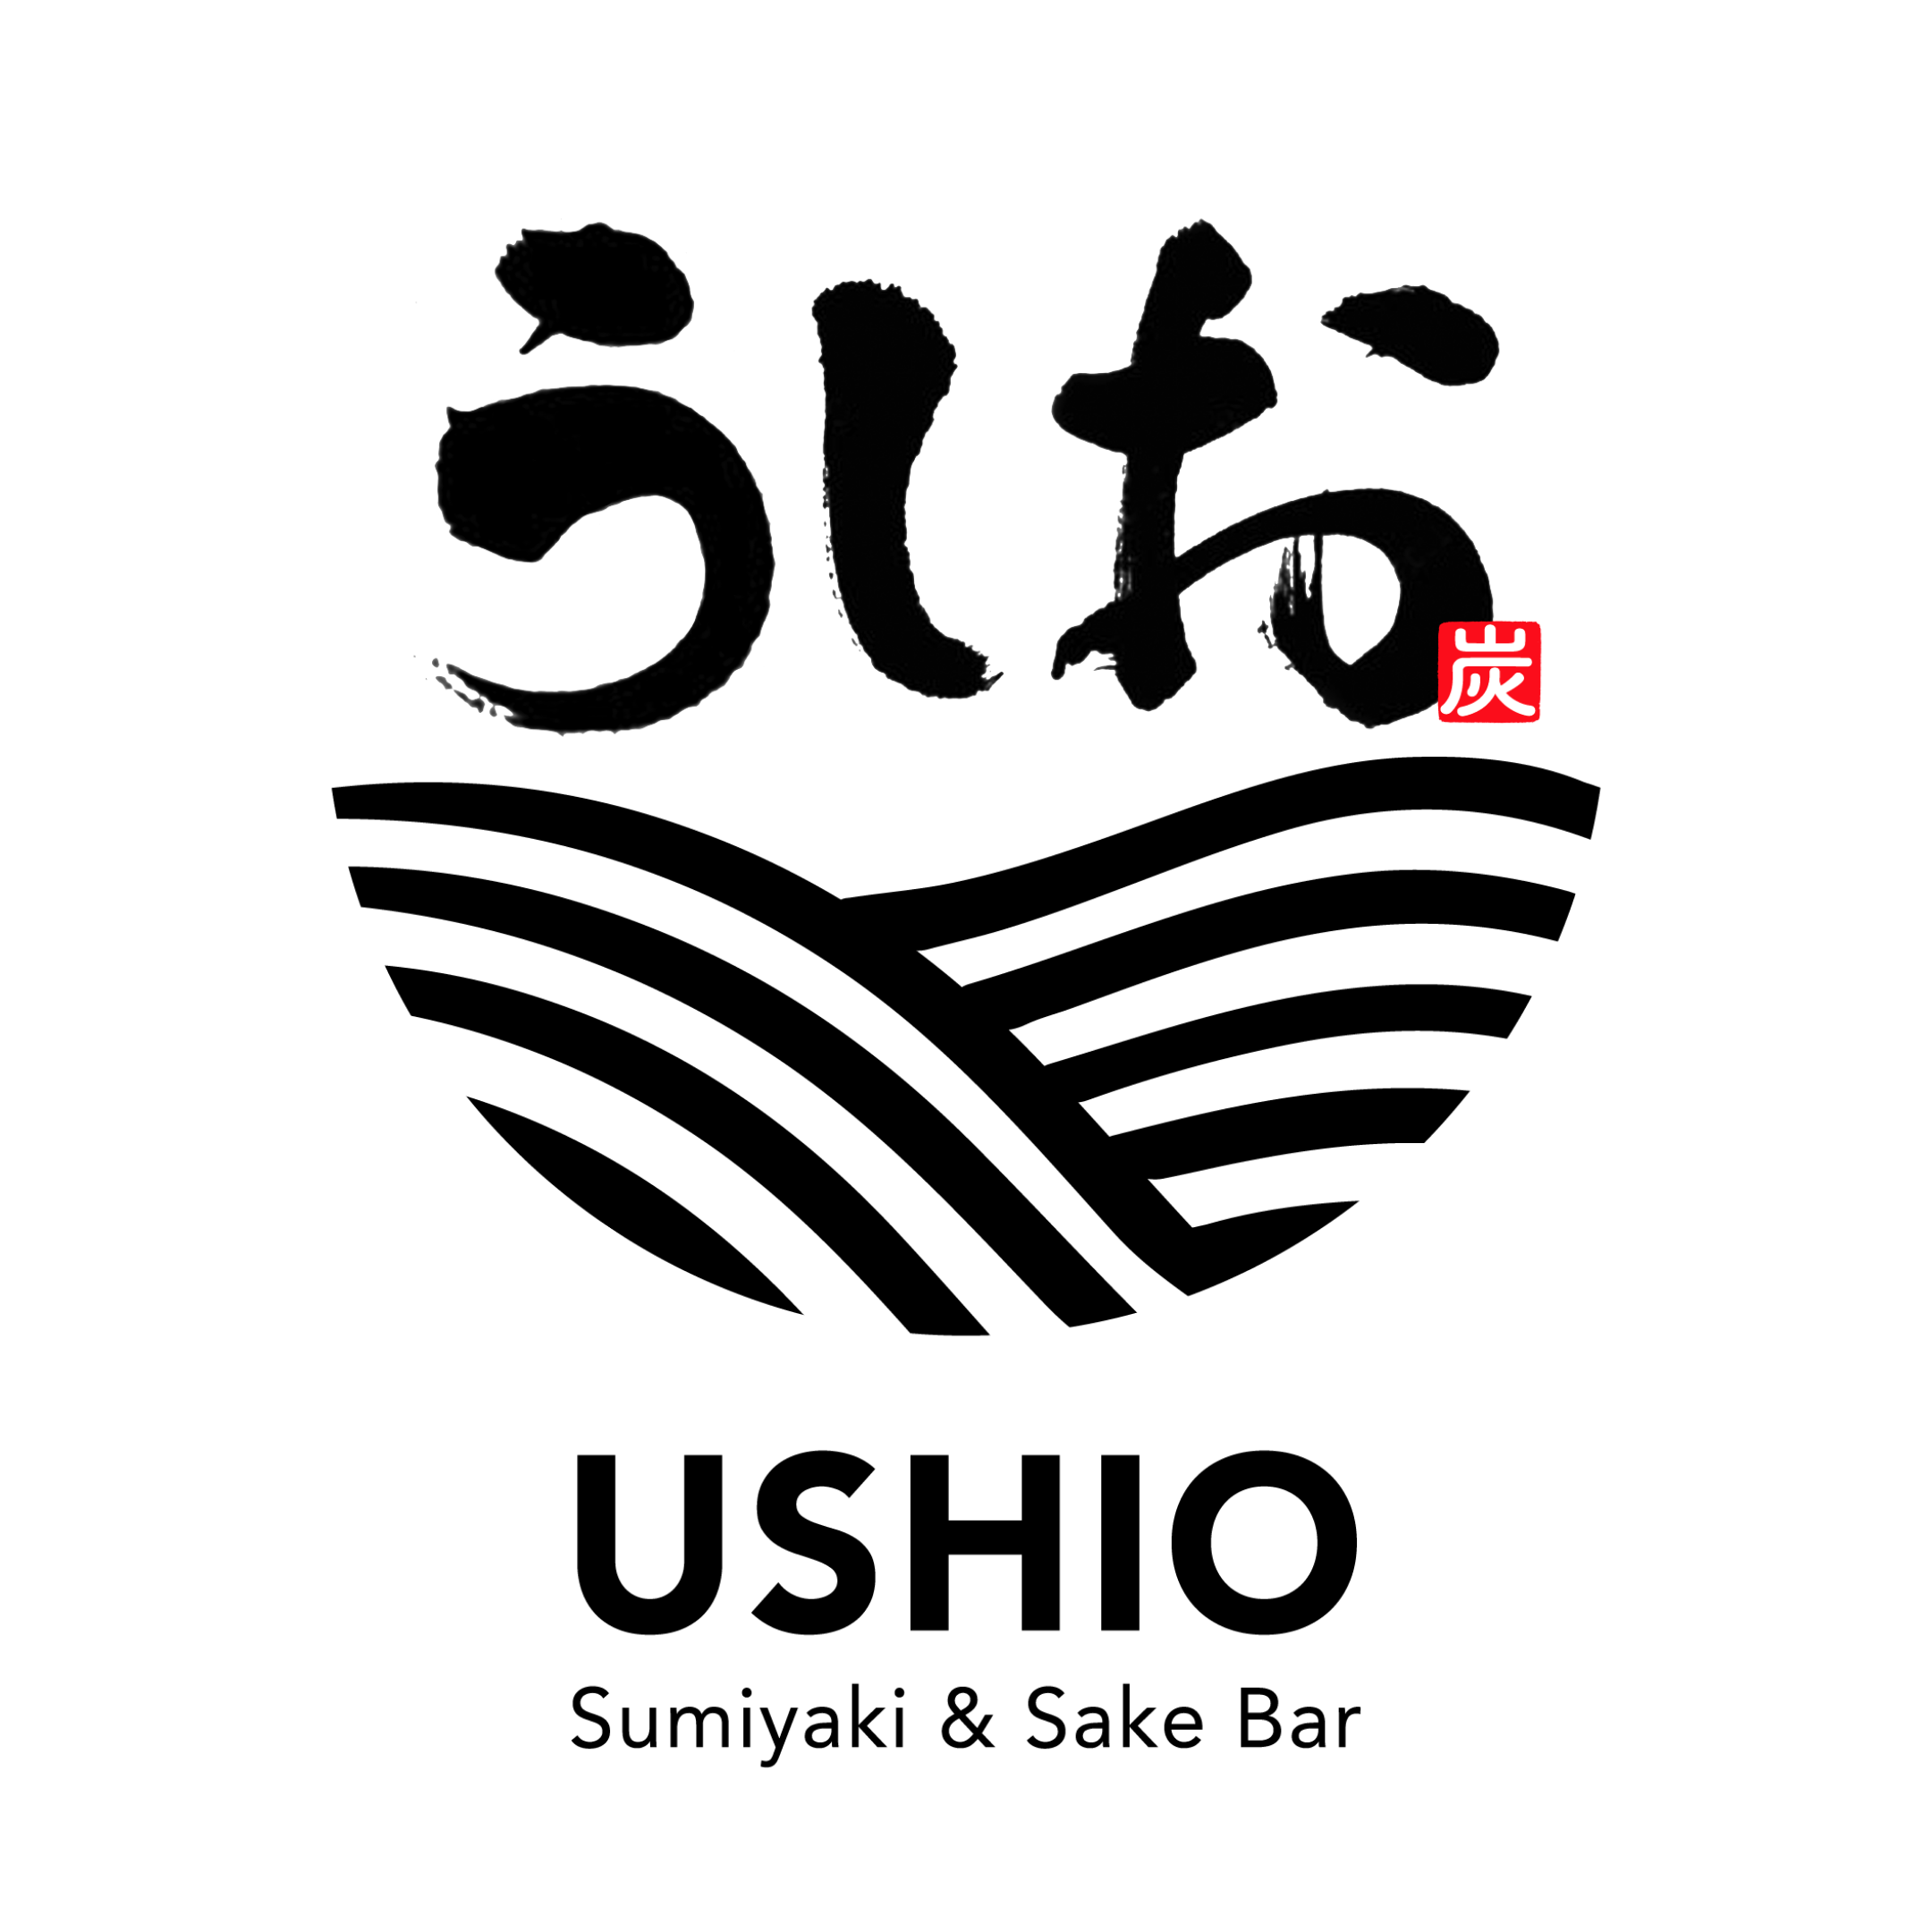 USHIO Sumiyaki & Sake Bar